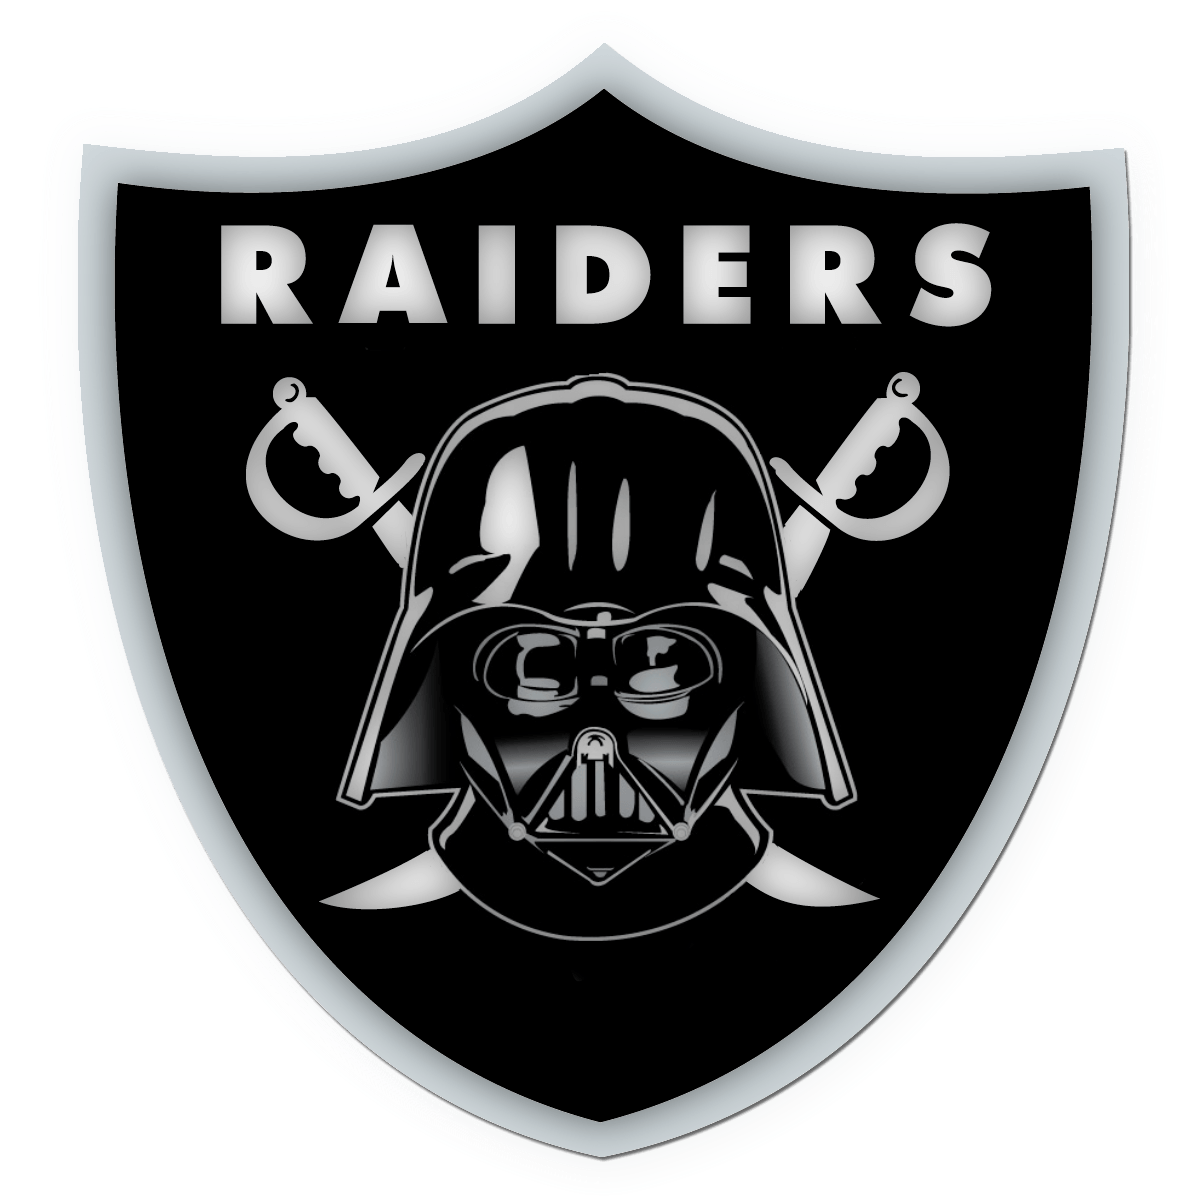 Raiders Logo - Oakland Raiders Logo. Raiders. Raiders, Oakland raiders logo